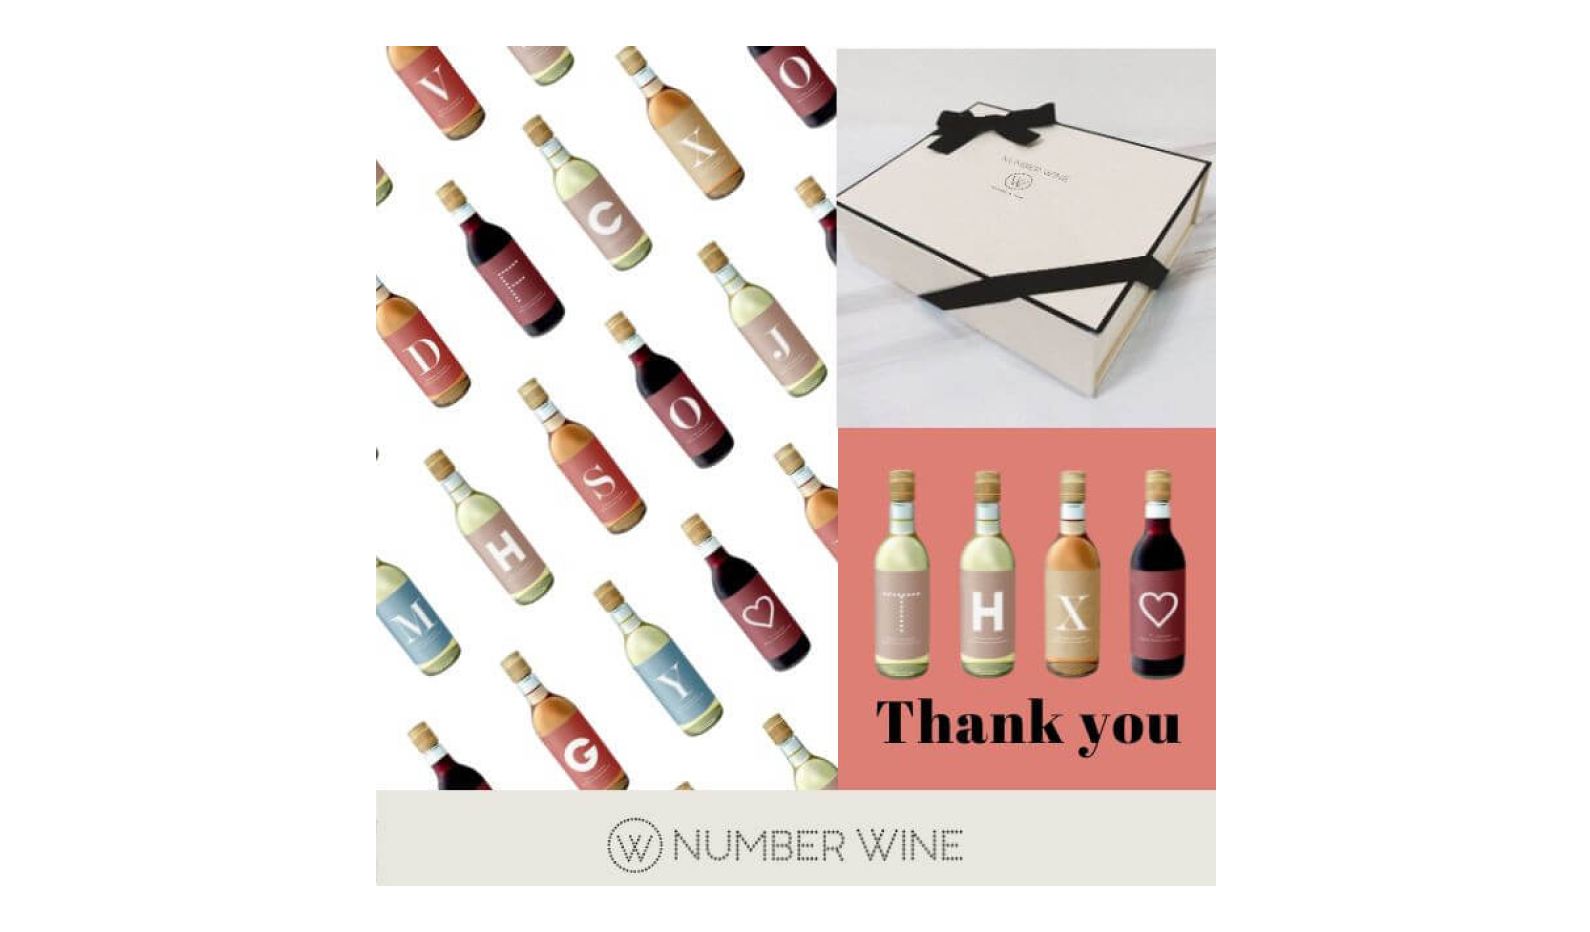 9.イニシャルで贈る国産ワイン「NUMBER WINE」SPECIAL GIFT BOX〈Thank you〉